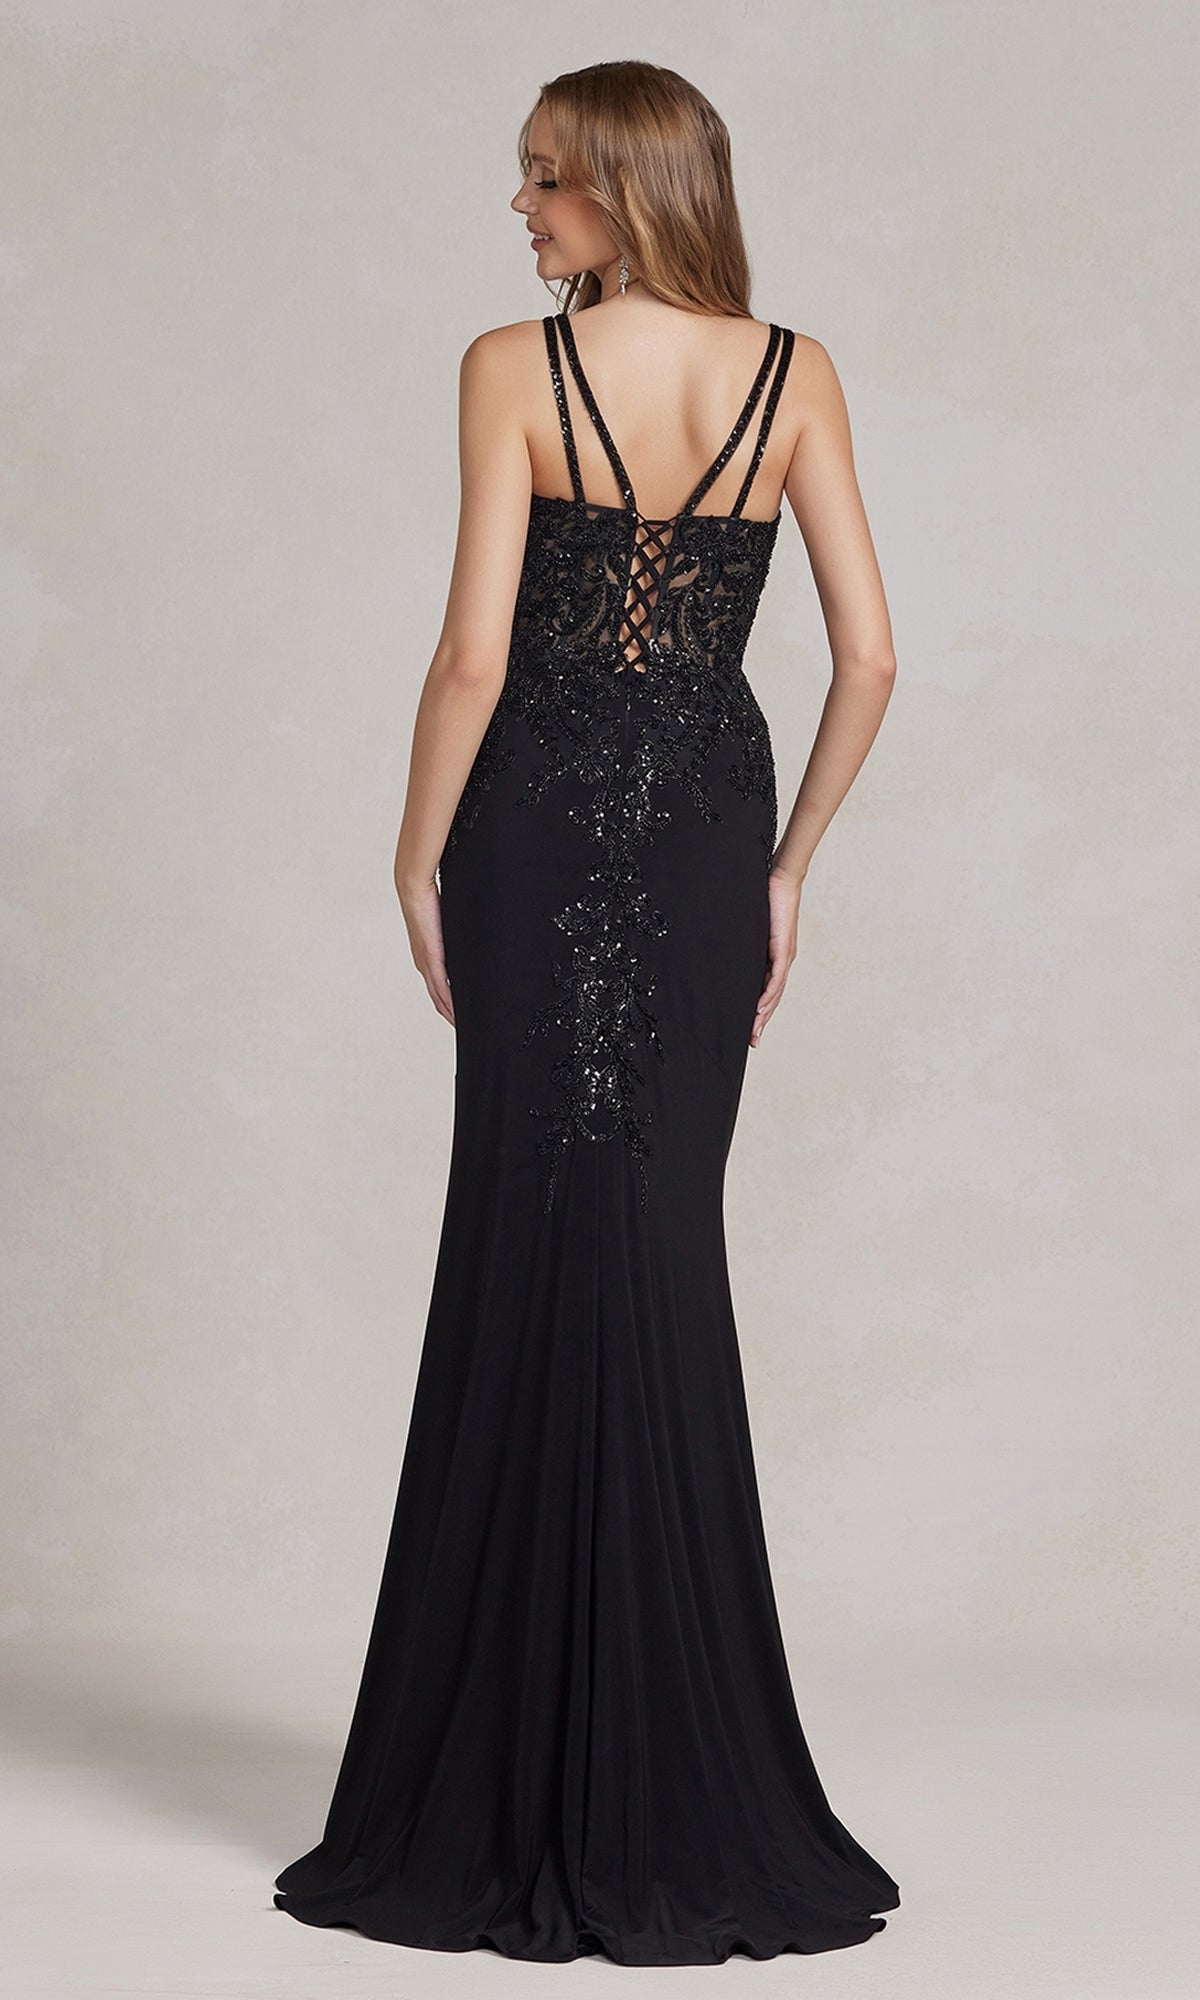  Embellished-Sheer-Bodice Long Formal Dress